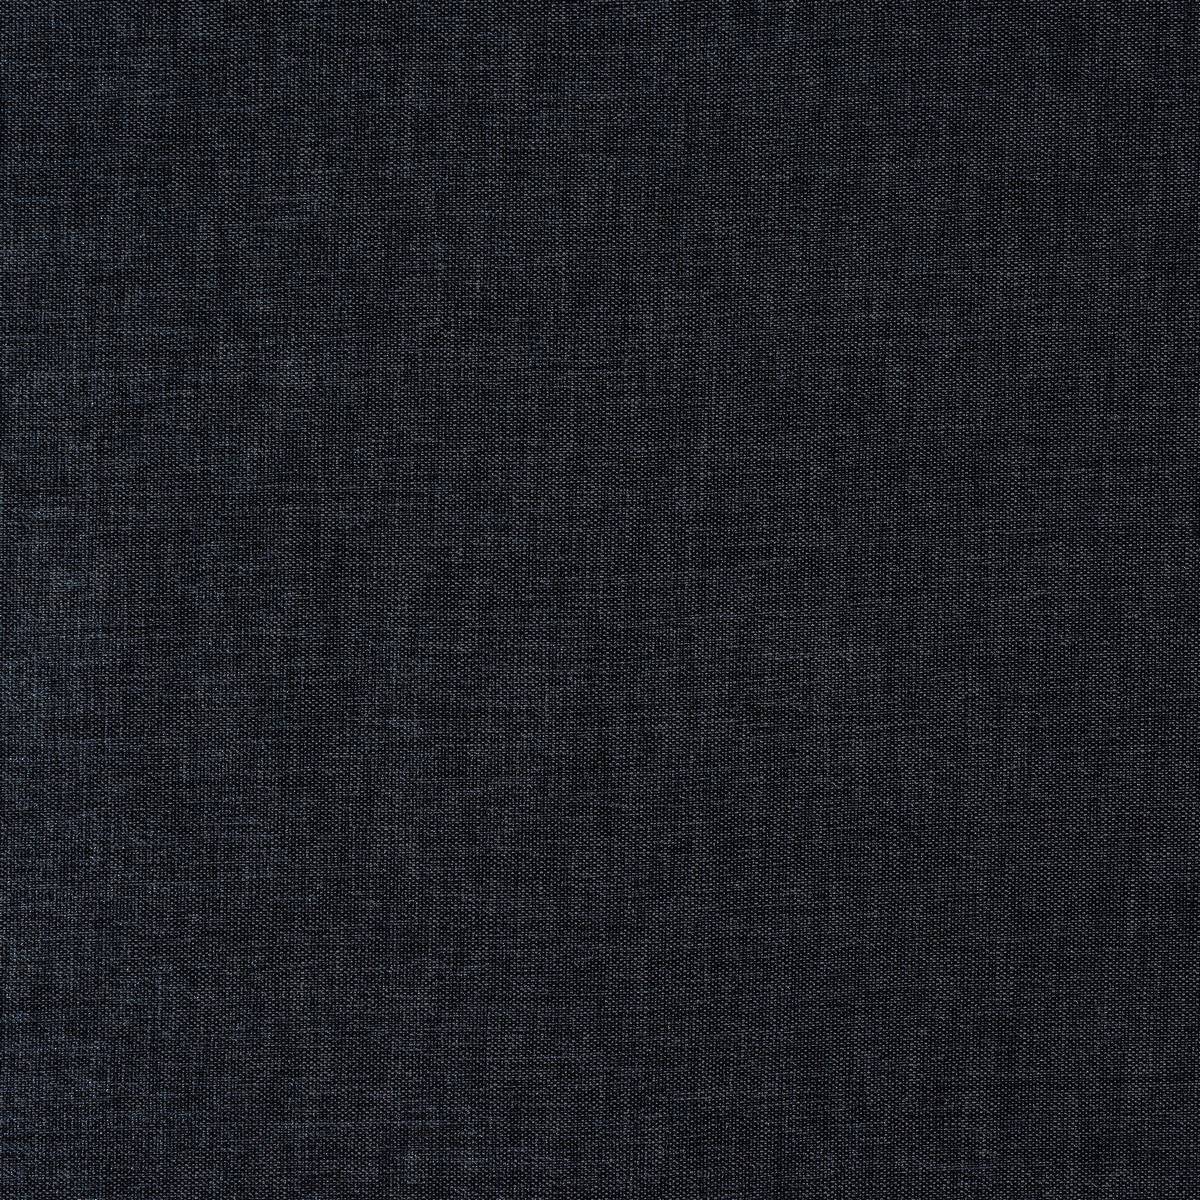 Nirvana Slate Fabric by Fryetts